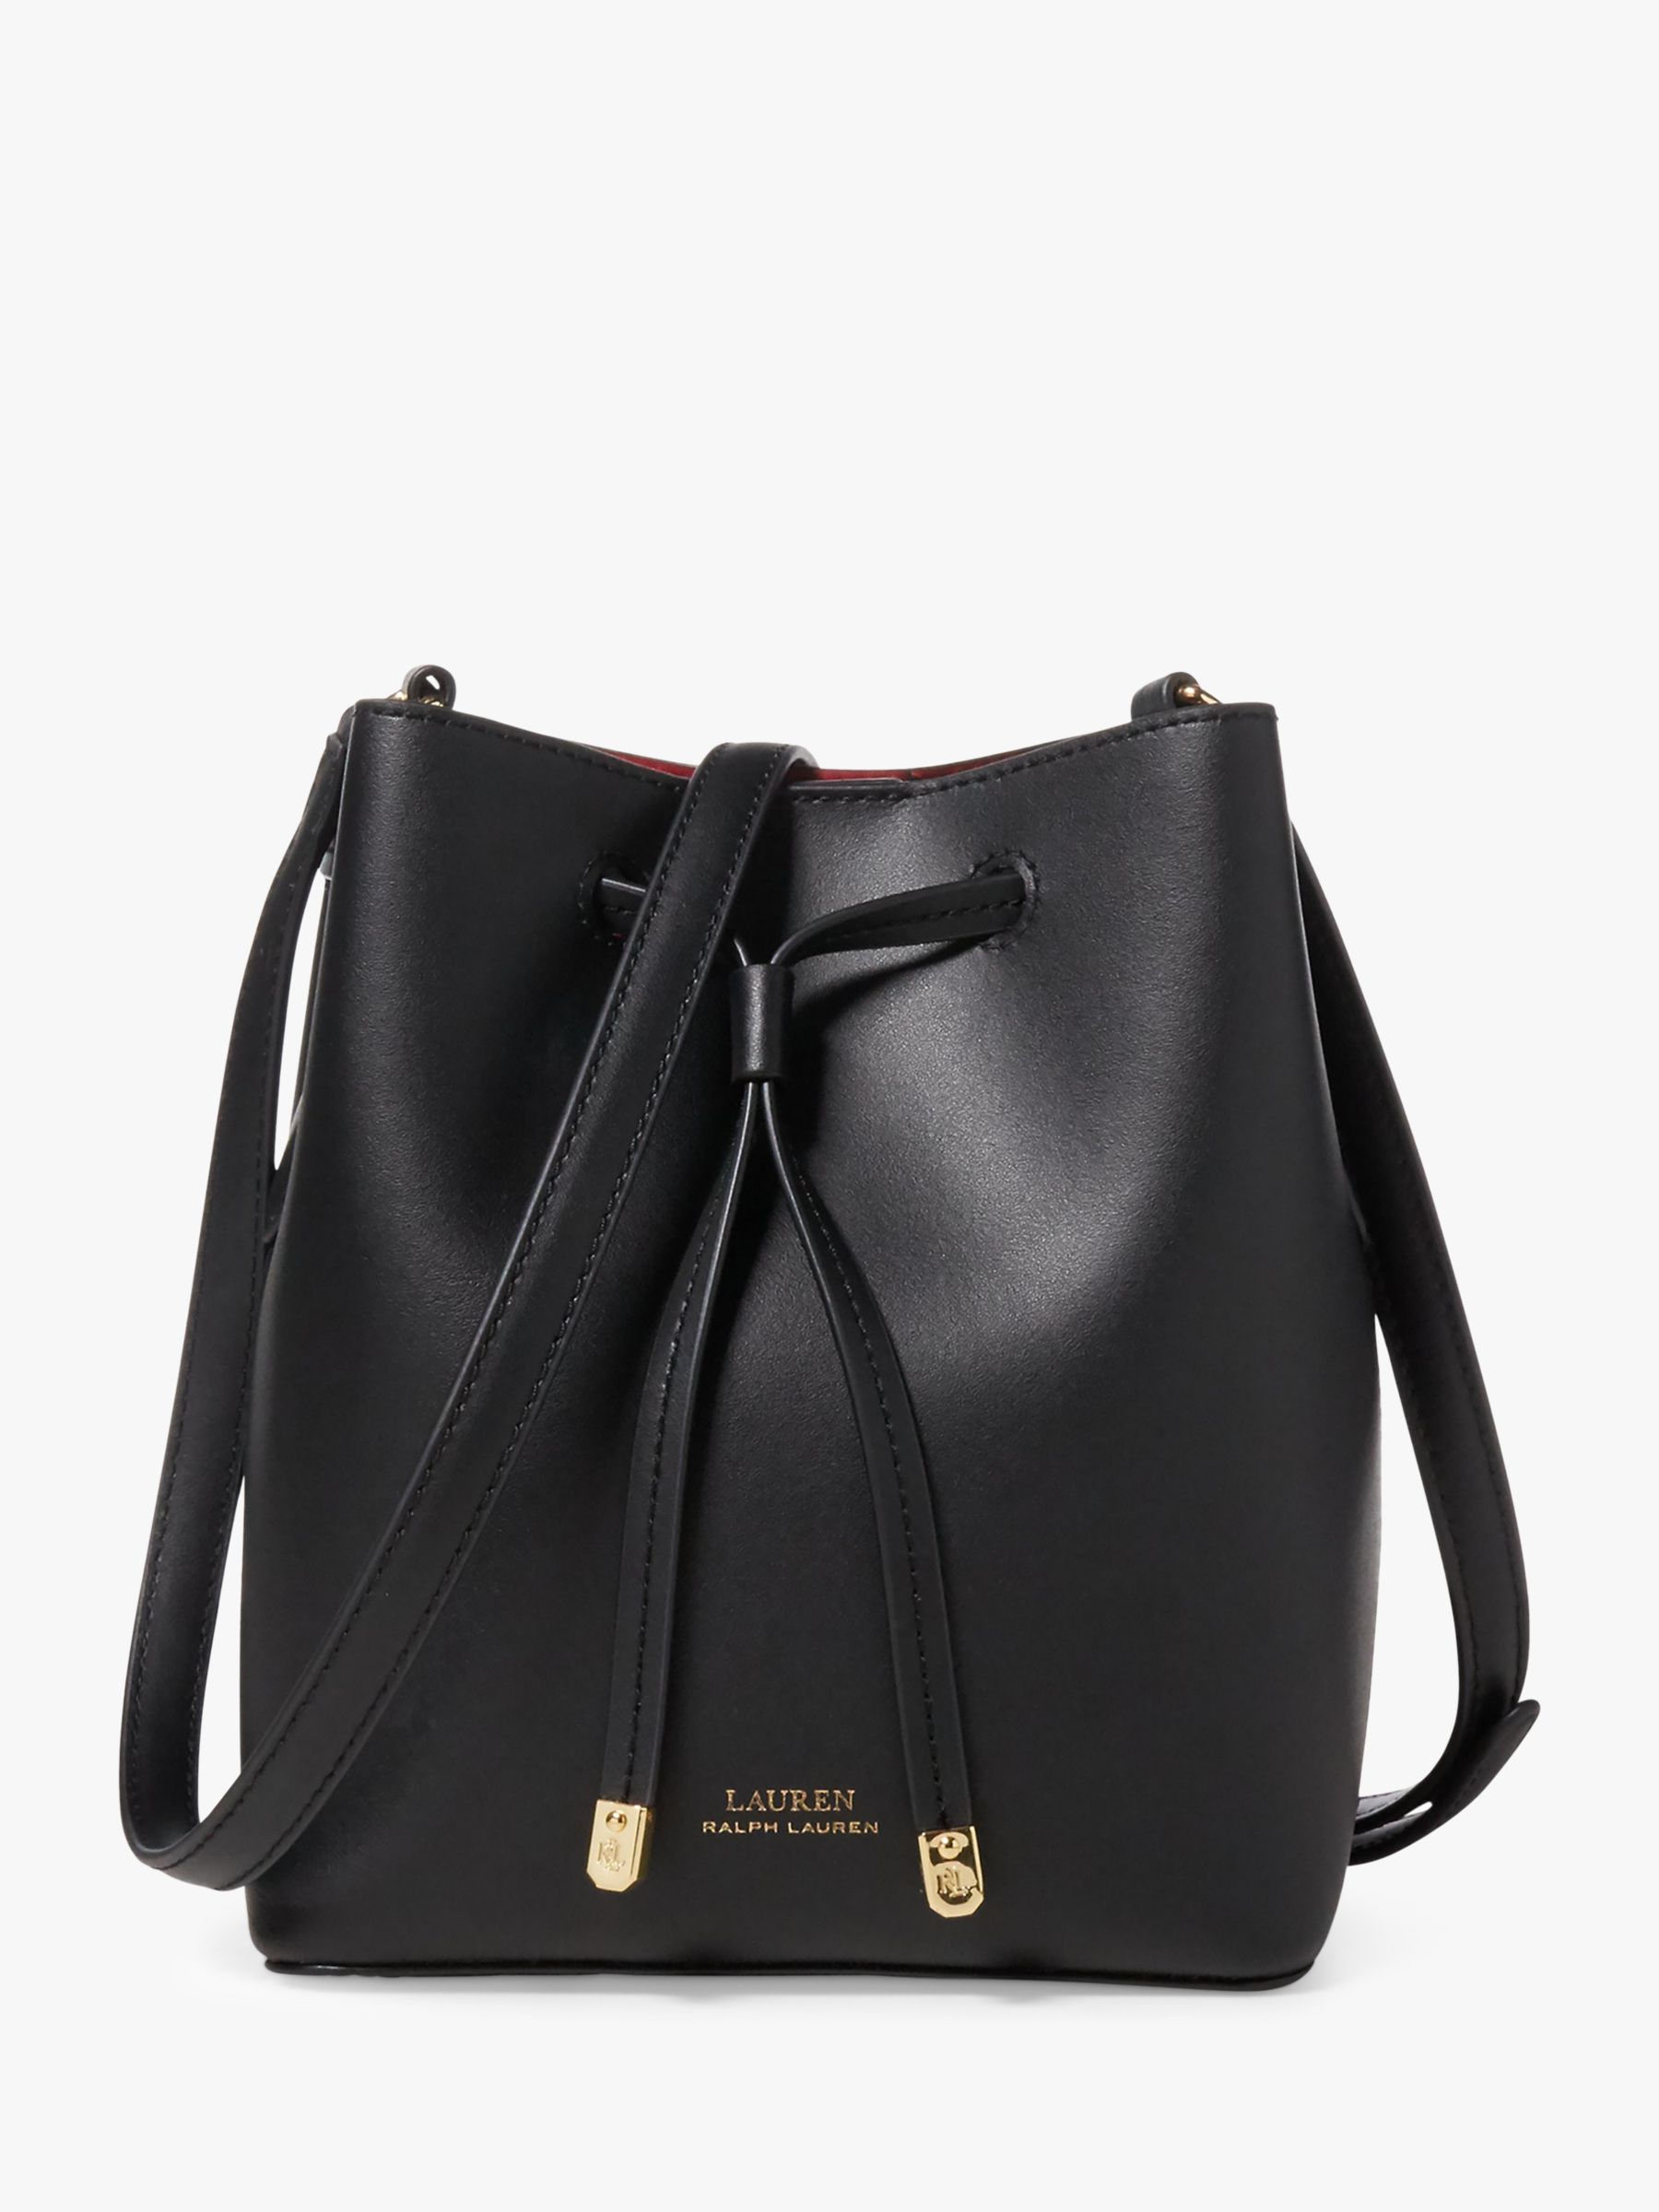 Lauren Ralph Lauren Dryden Debby Leather Mini Bucket Bag, Black